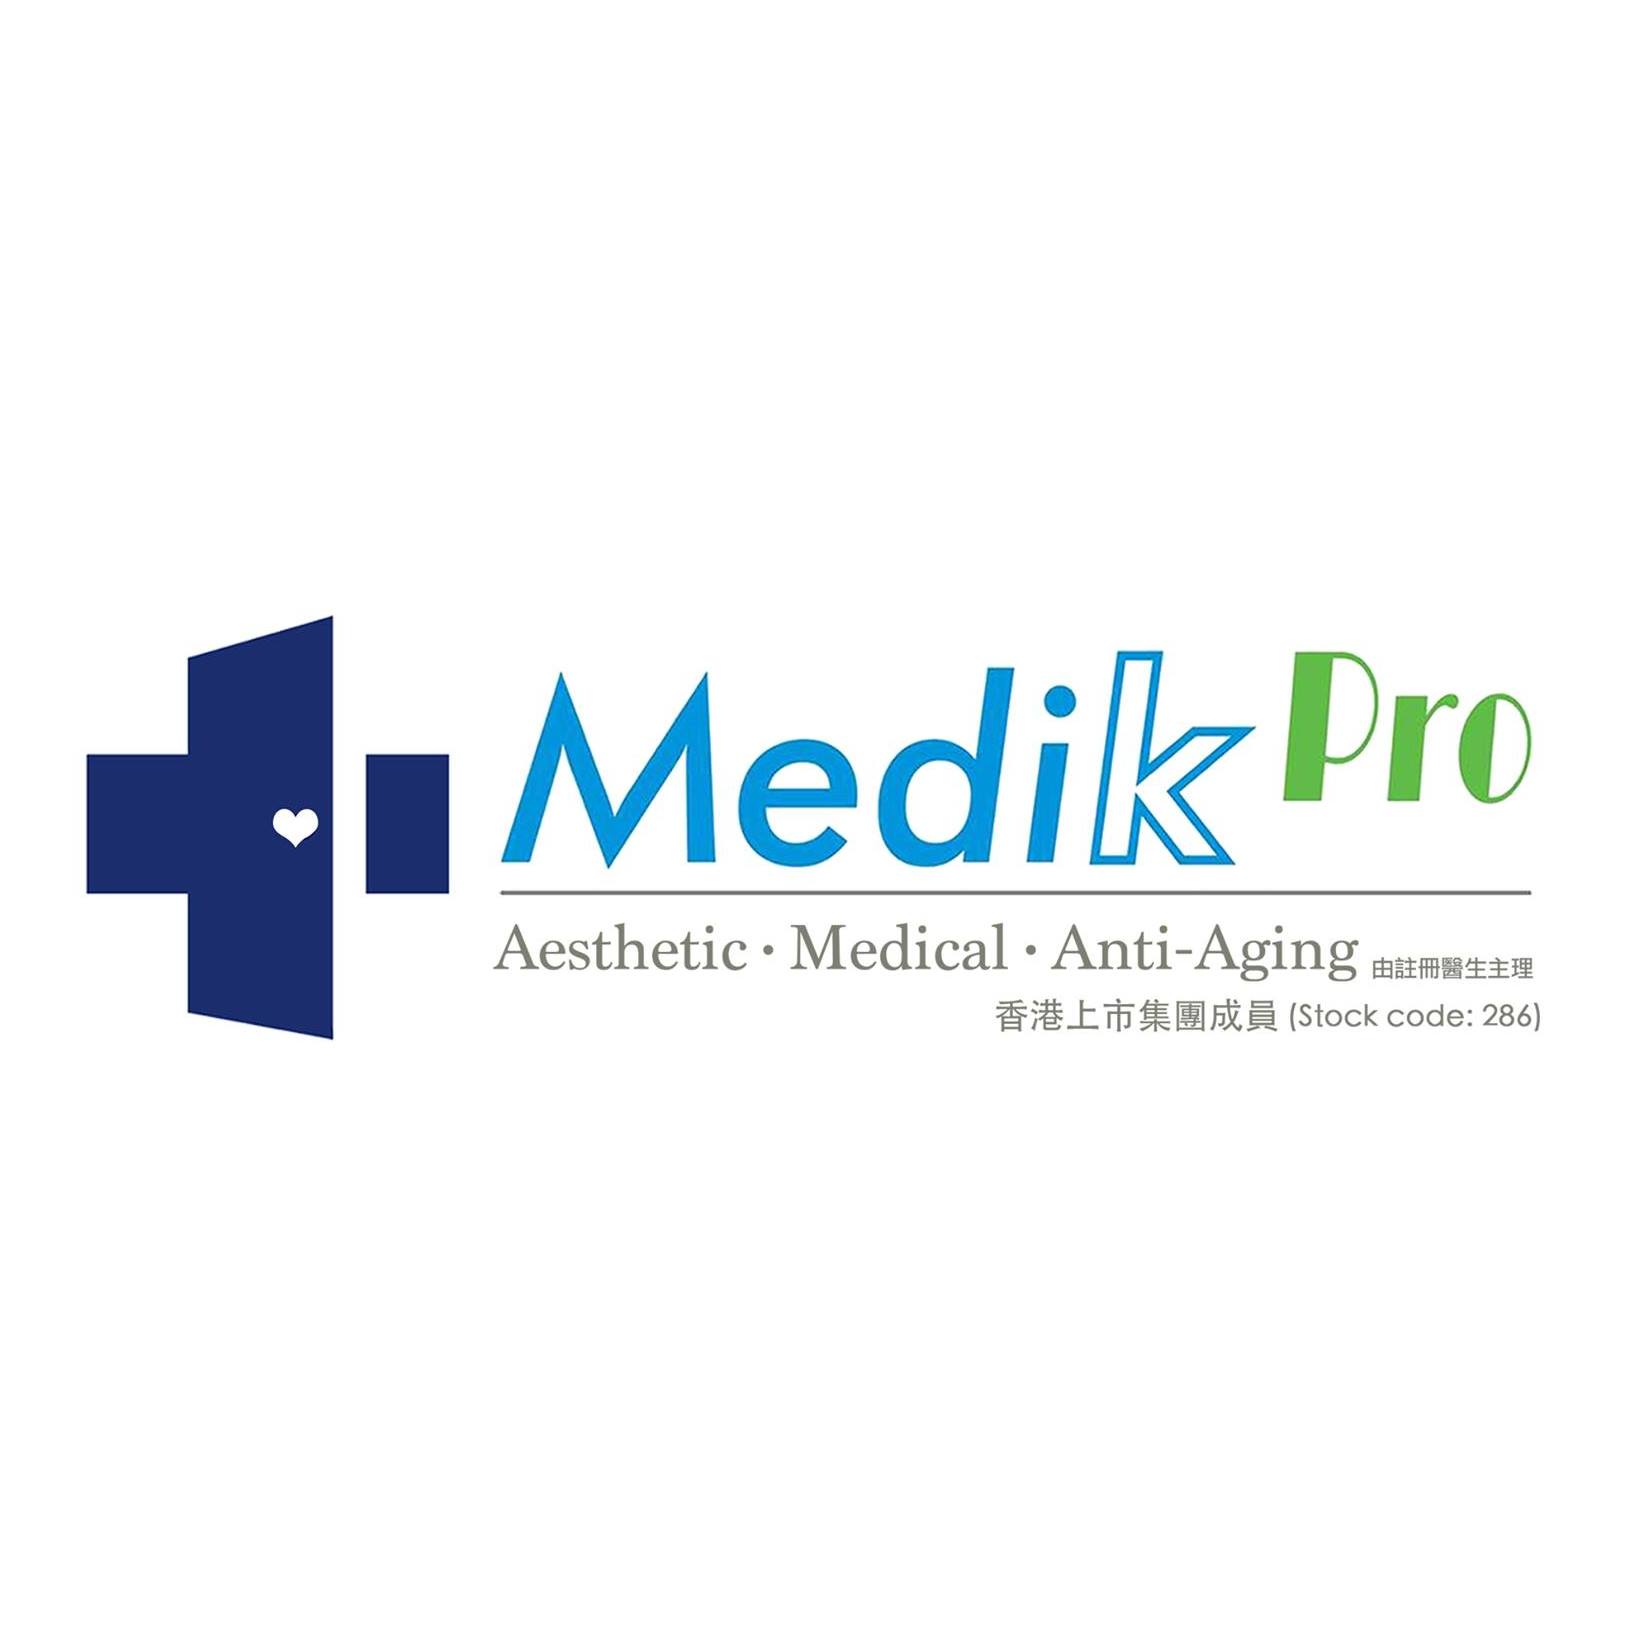 医学美容: Medik Pro (佐敦分店)